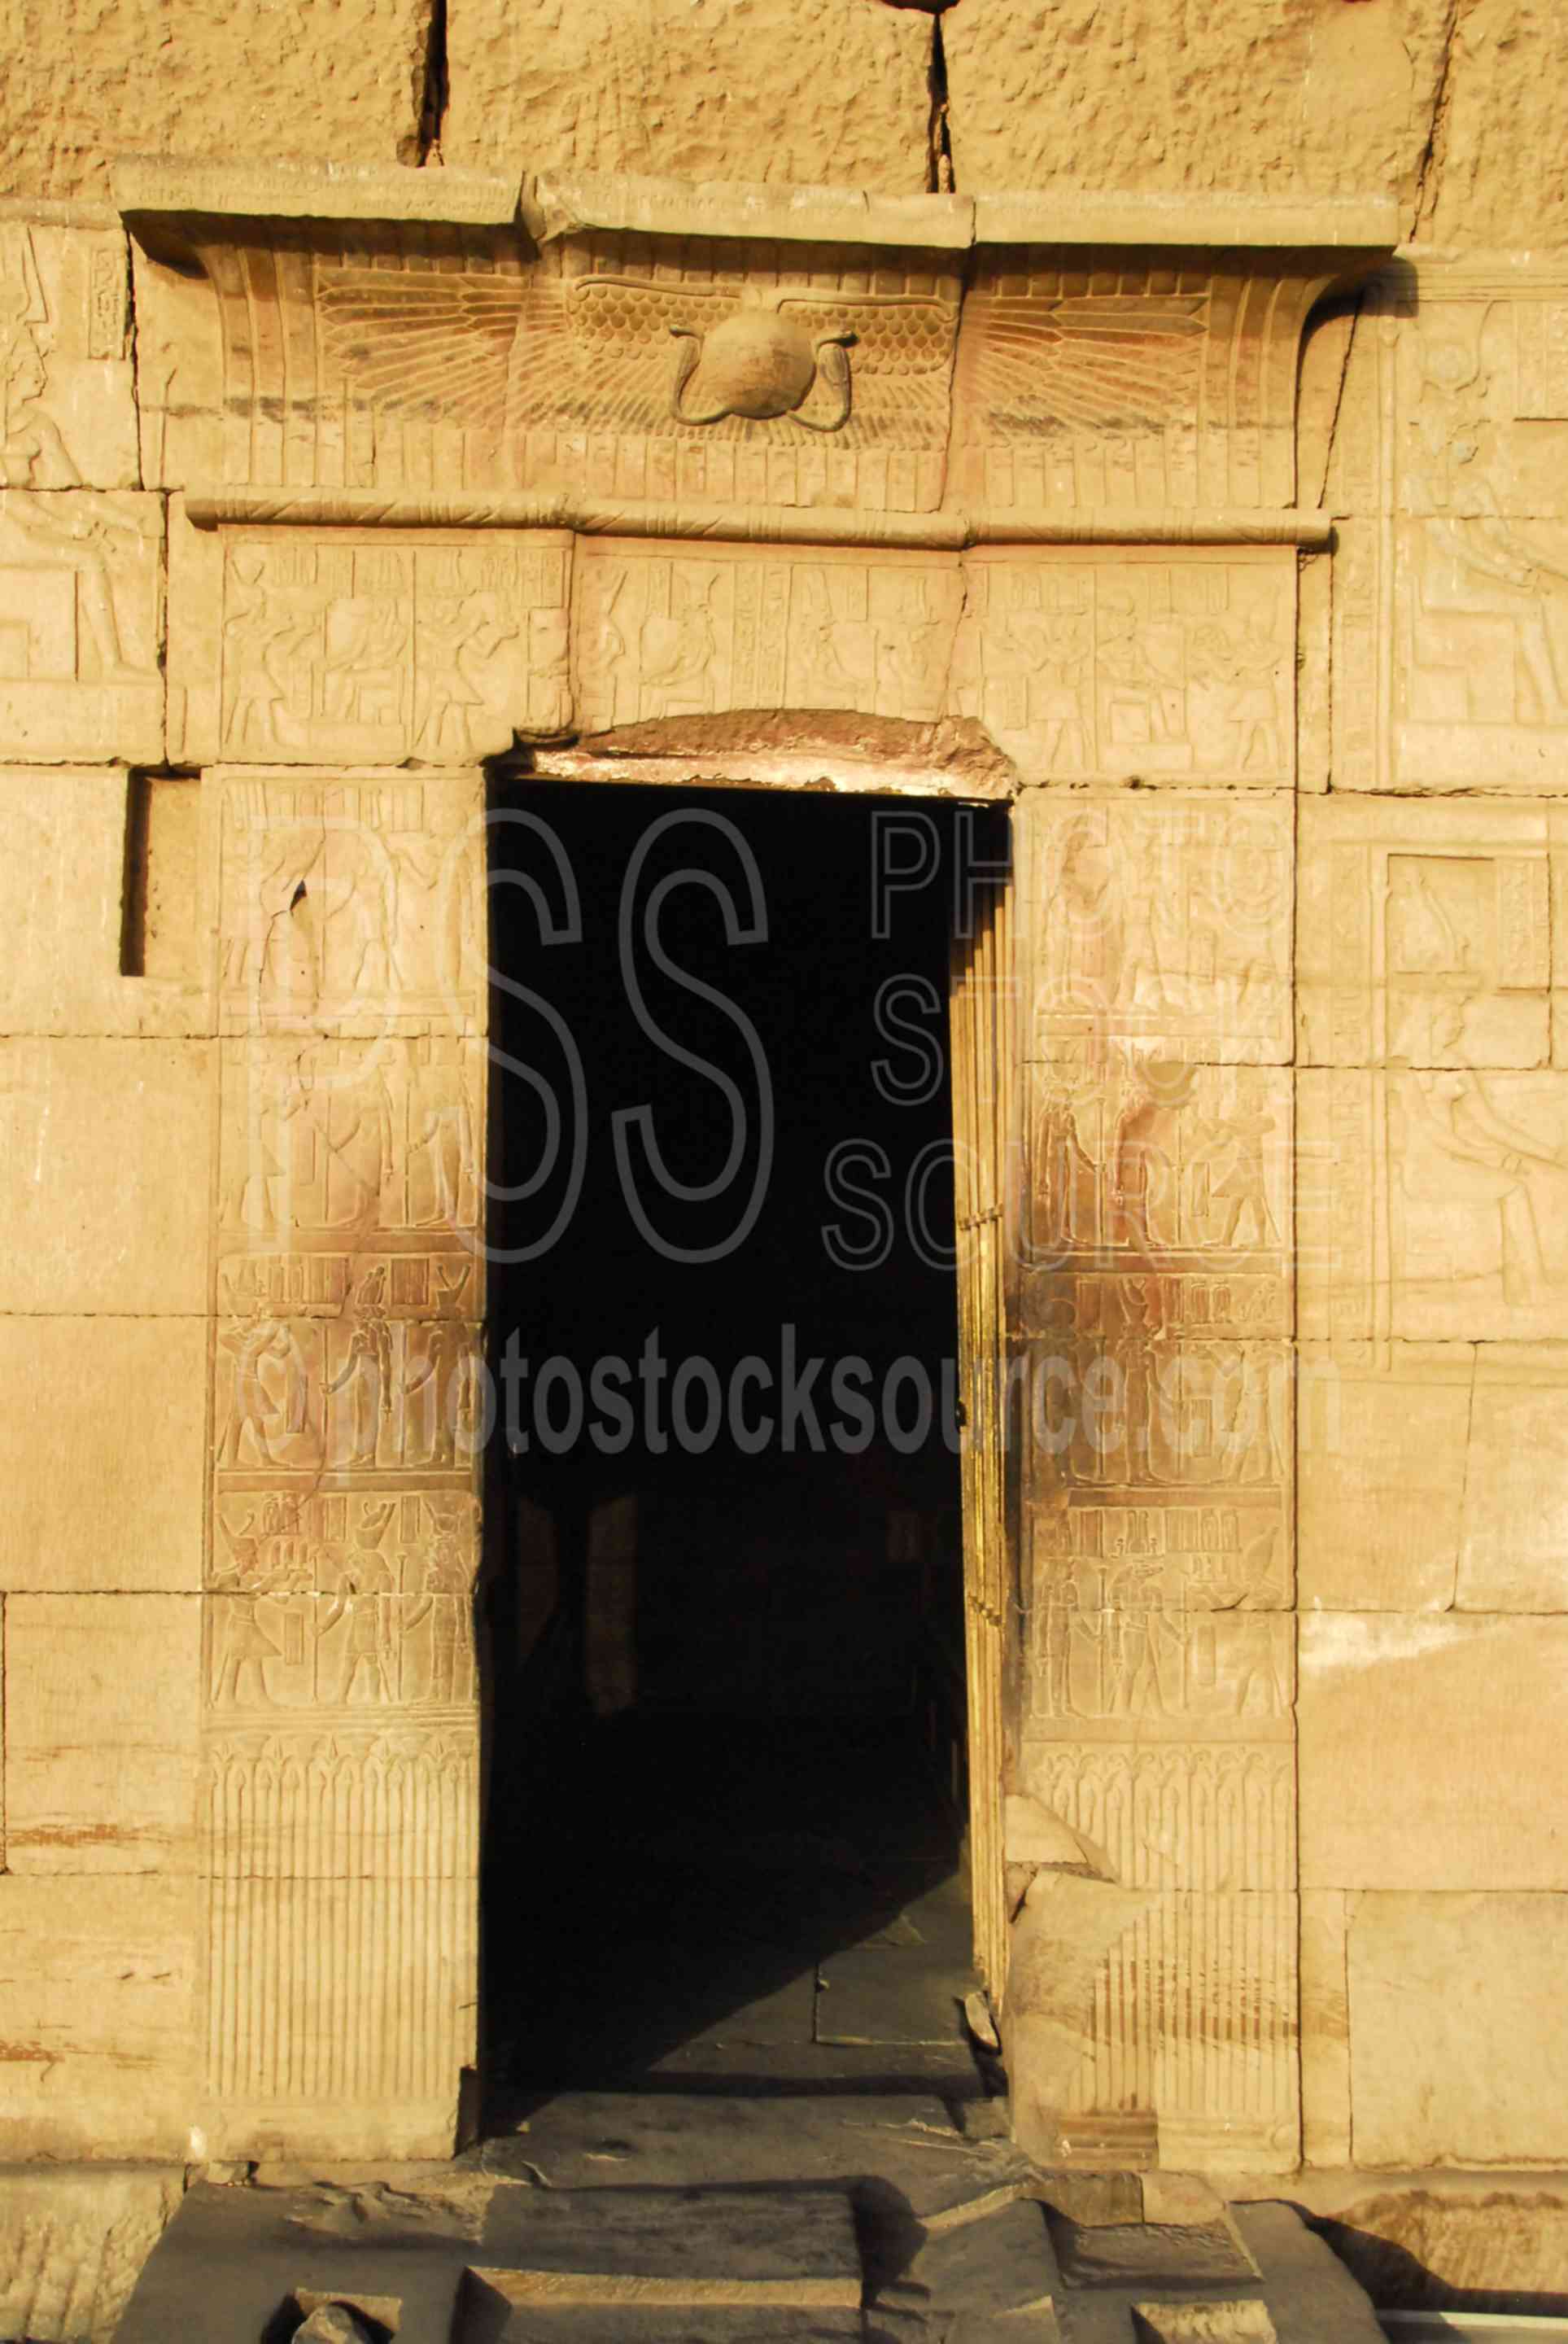 Door with Hieroglyphics,ptolemy,horus,haroeris,sobek,horus the elder,hieroglyphics,architecture